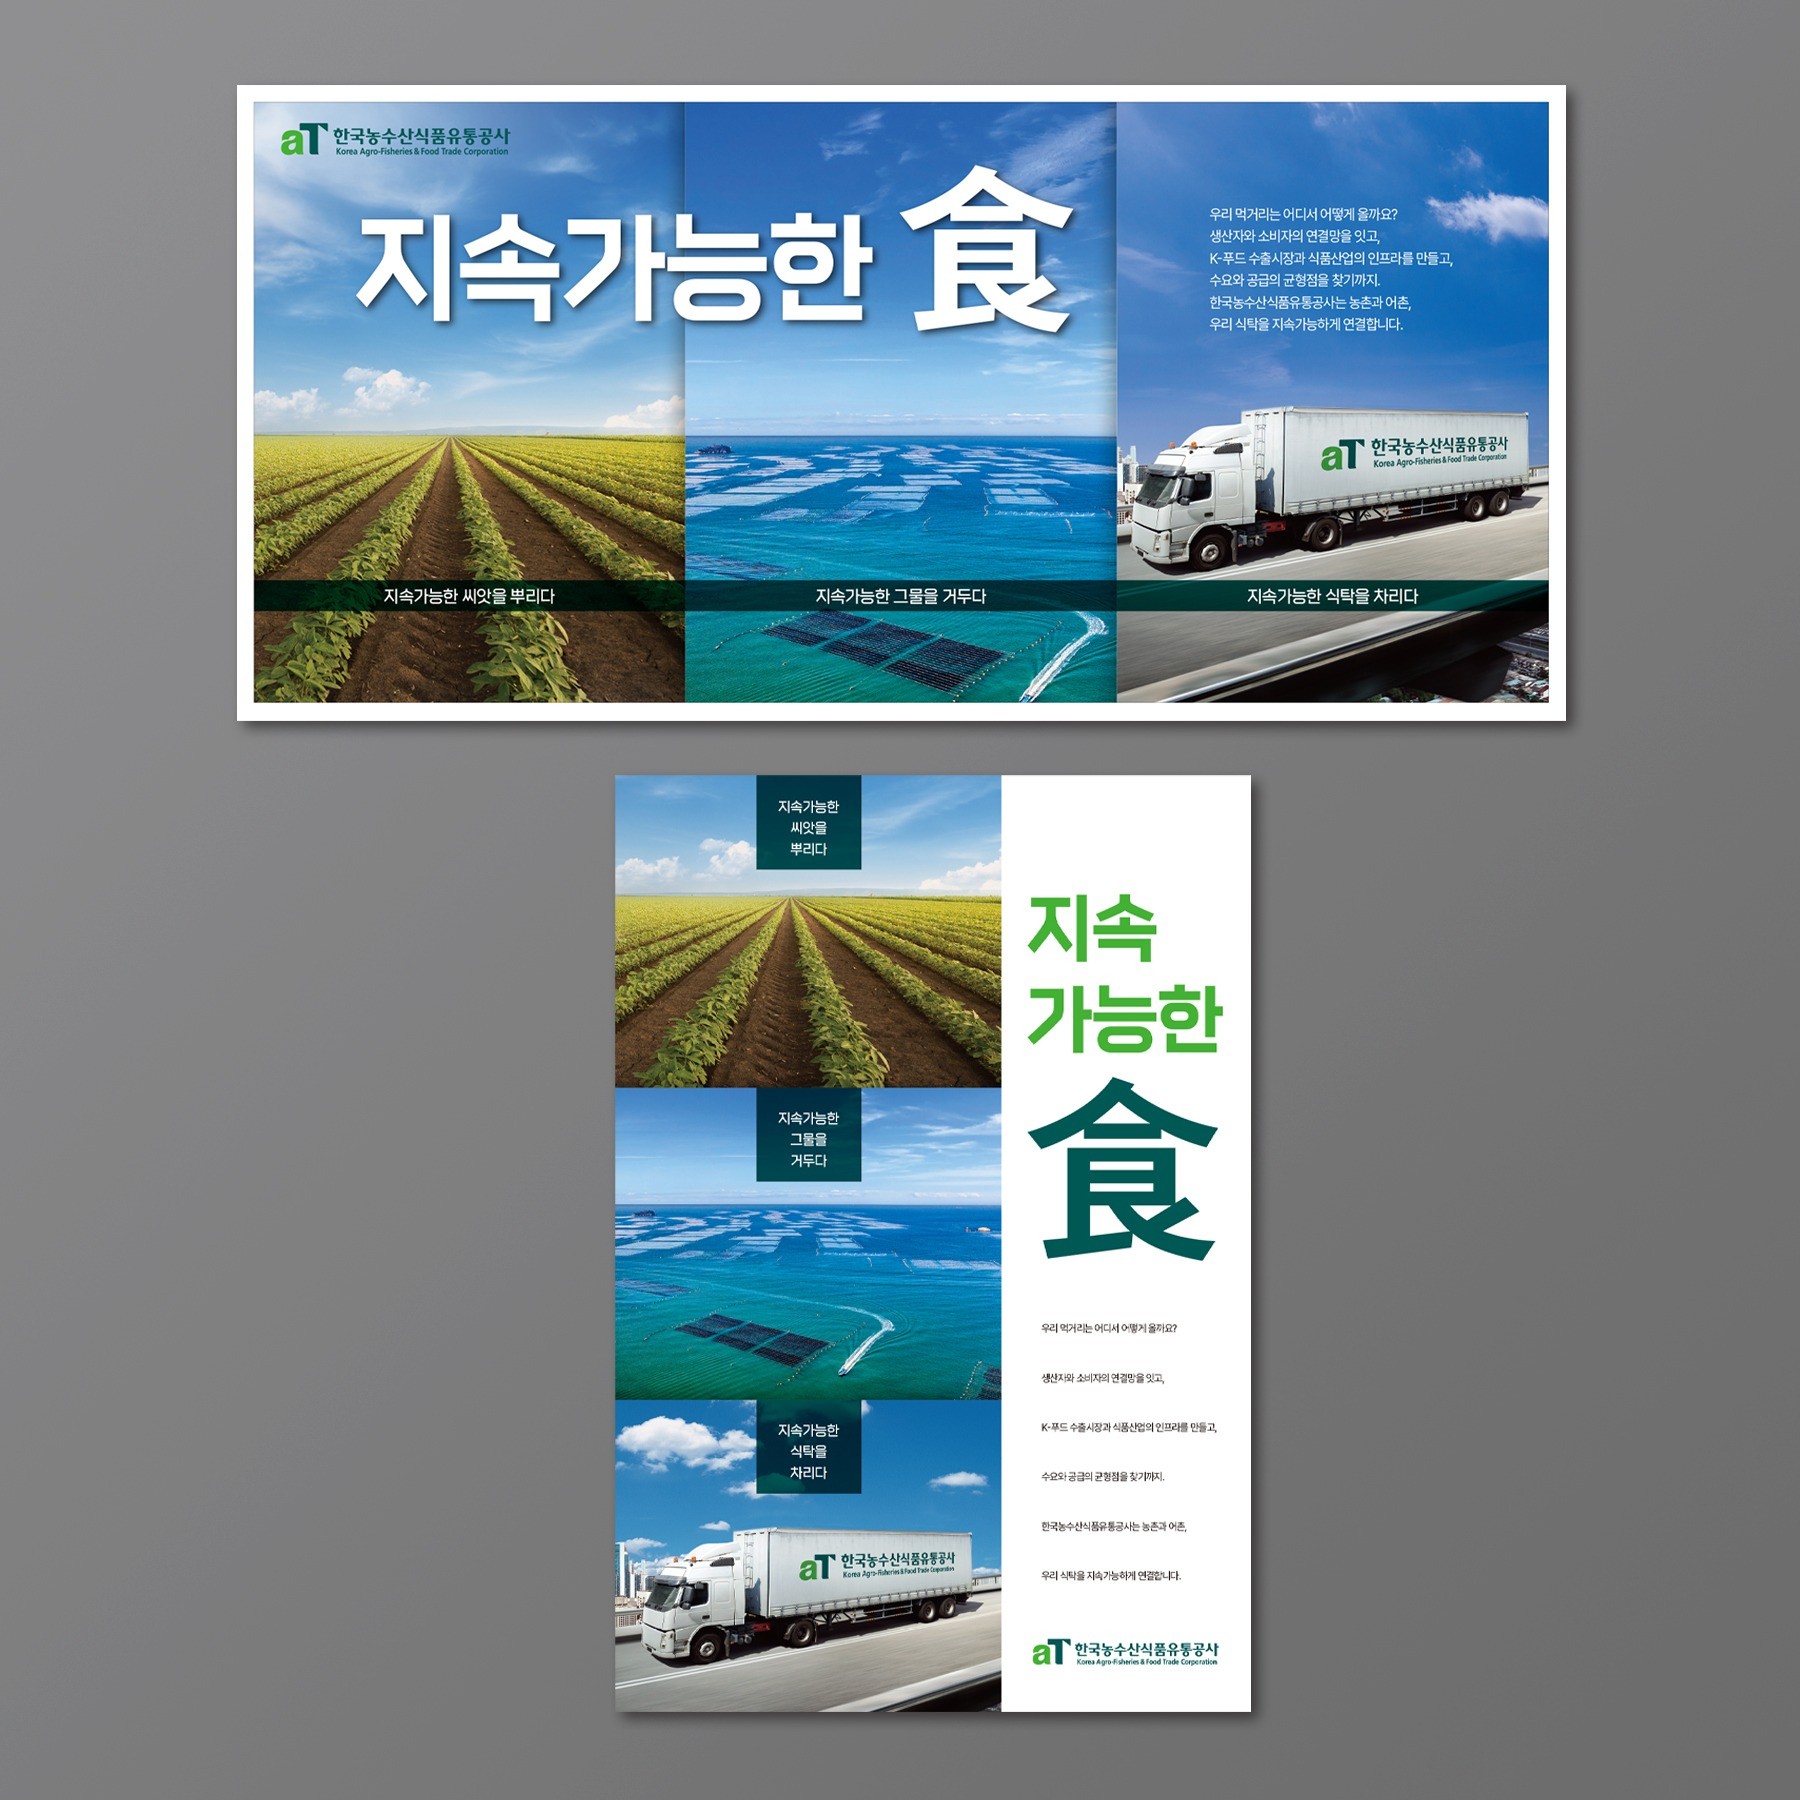 포트폴리오-aT한국농수산식품유통공사 인쇄광고